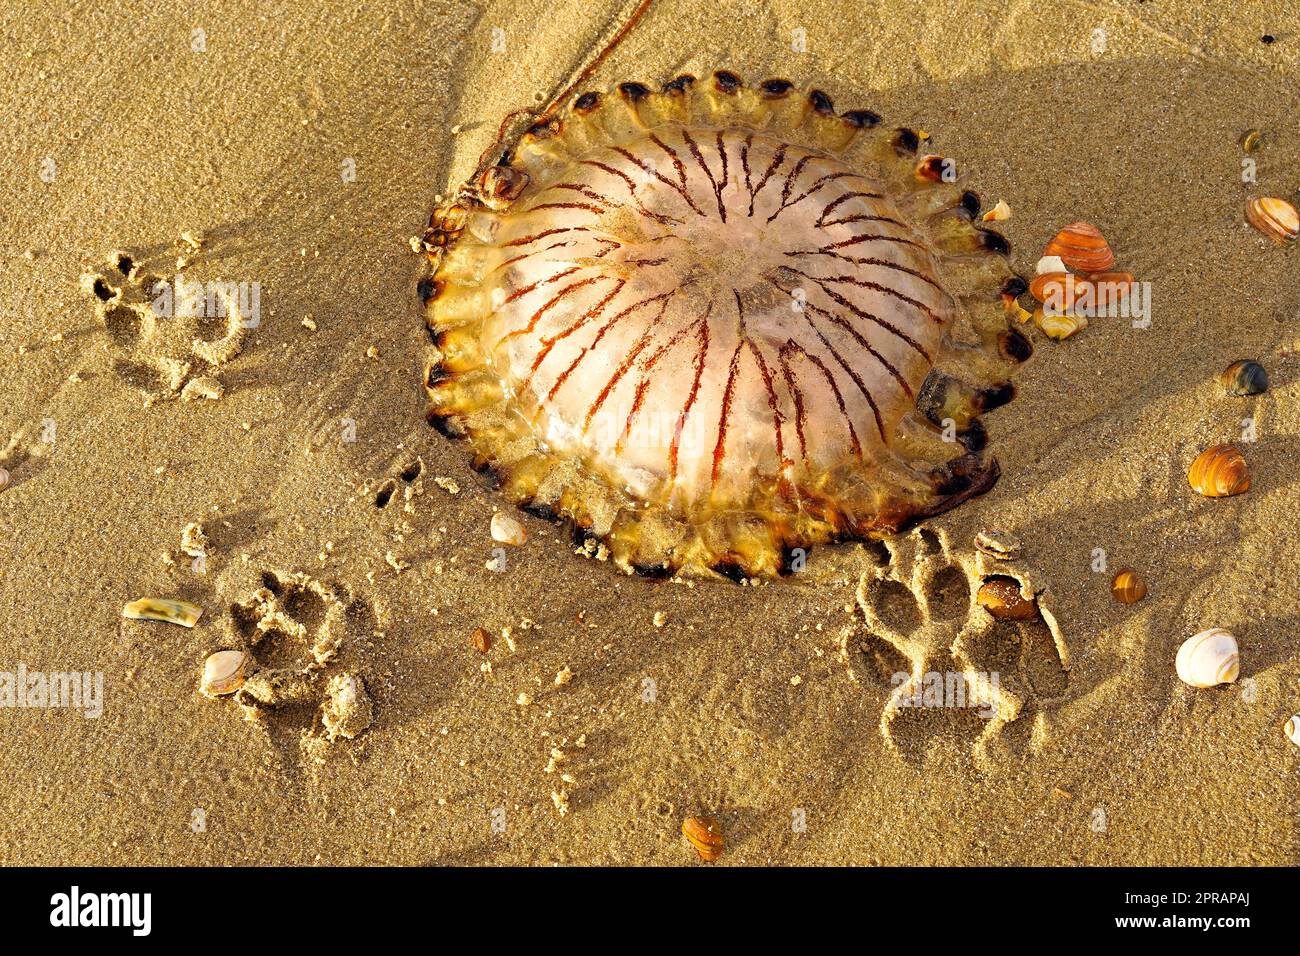 Eine Kompassqualle am Strand. North Holland Dune Reserve, Egmond aan Zee, Niederlande. Stockfoto